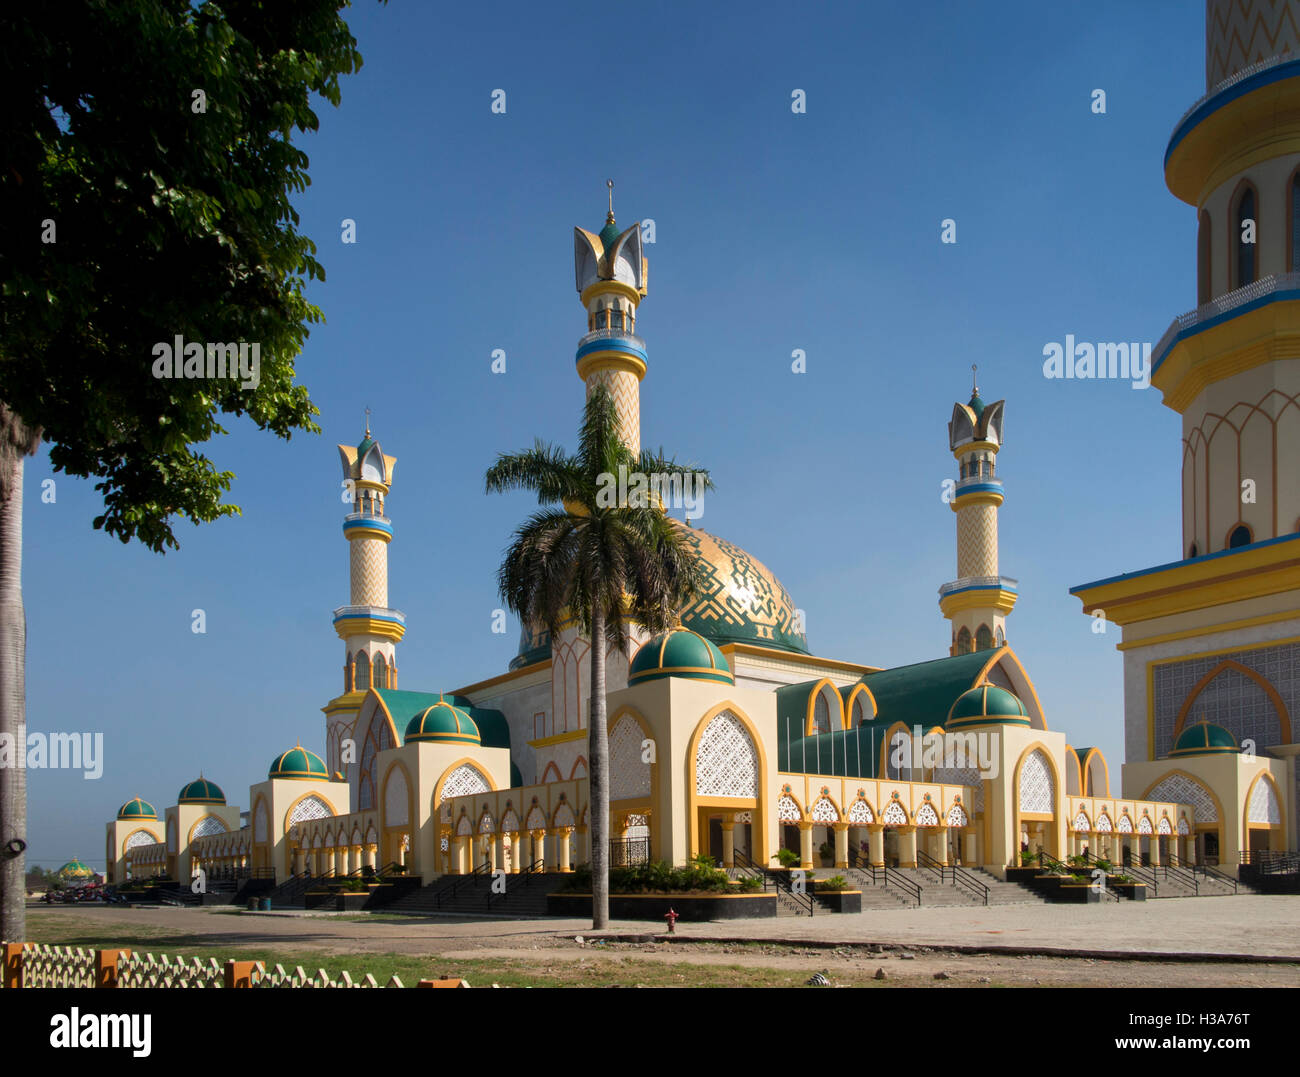 Indonesia, Lombok, Mataram, Jalan Langko, Islamic Centre NTB mosque Stock Photo